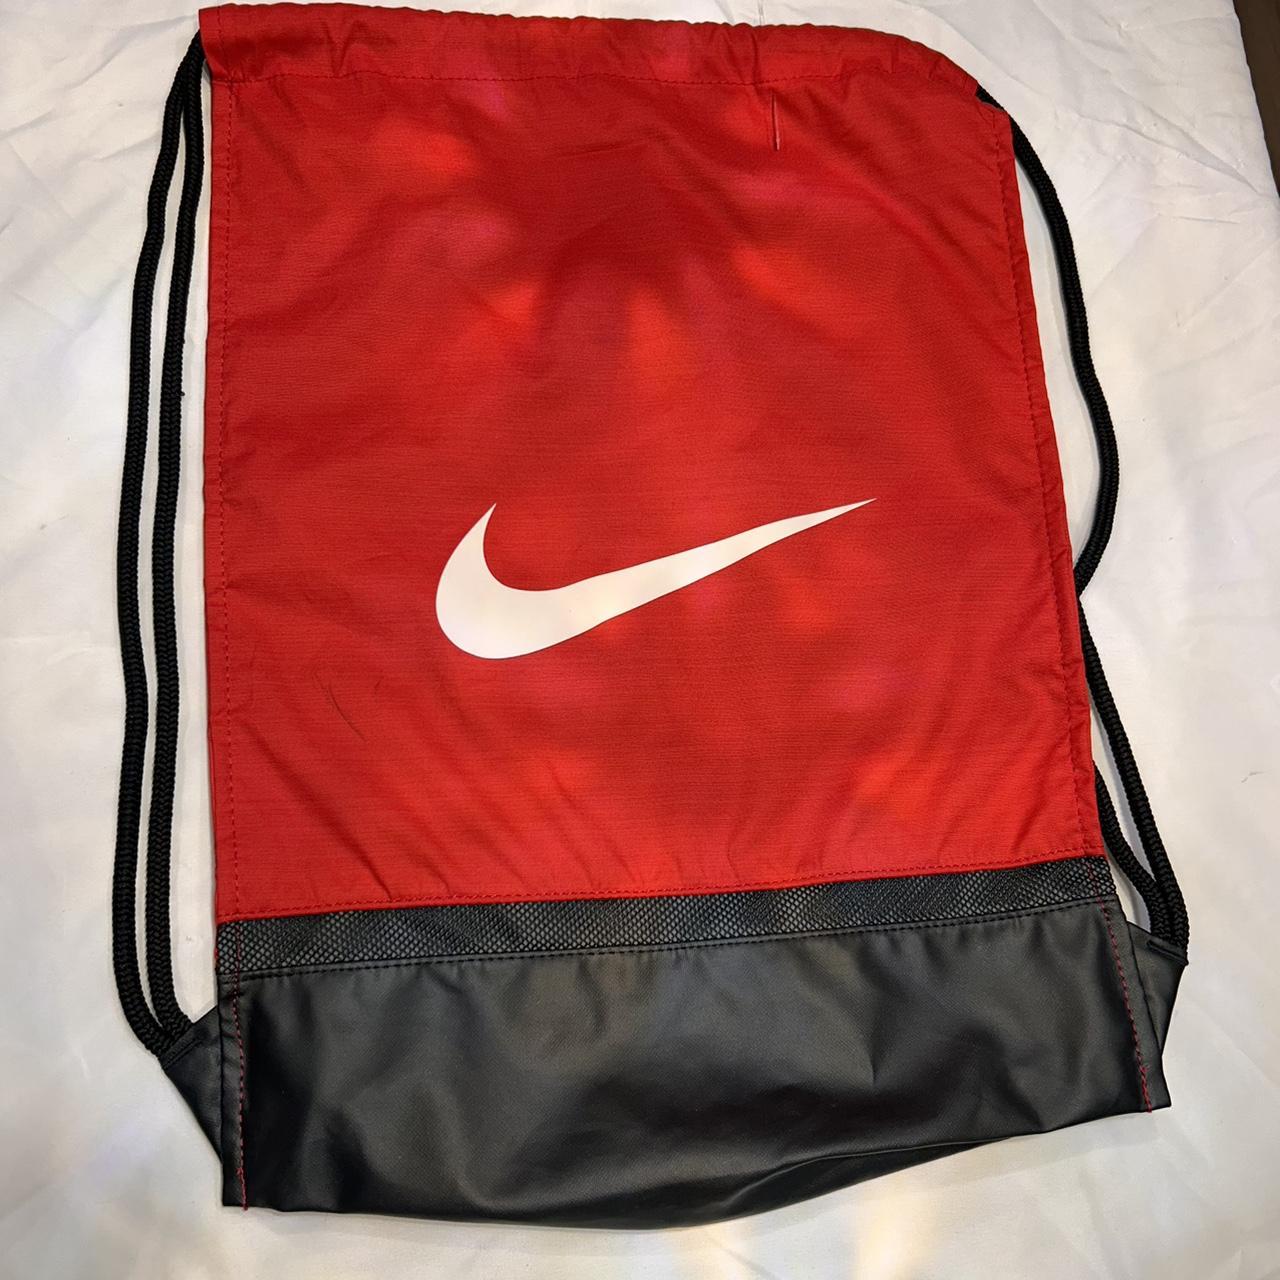 Nike backpack - Depop